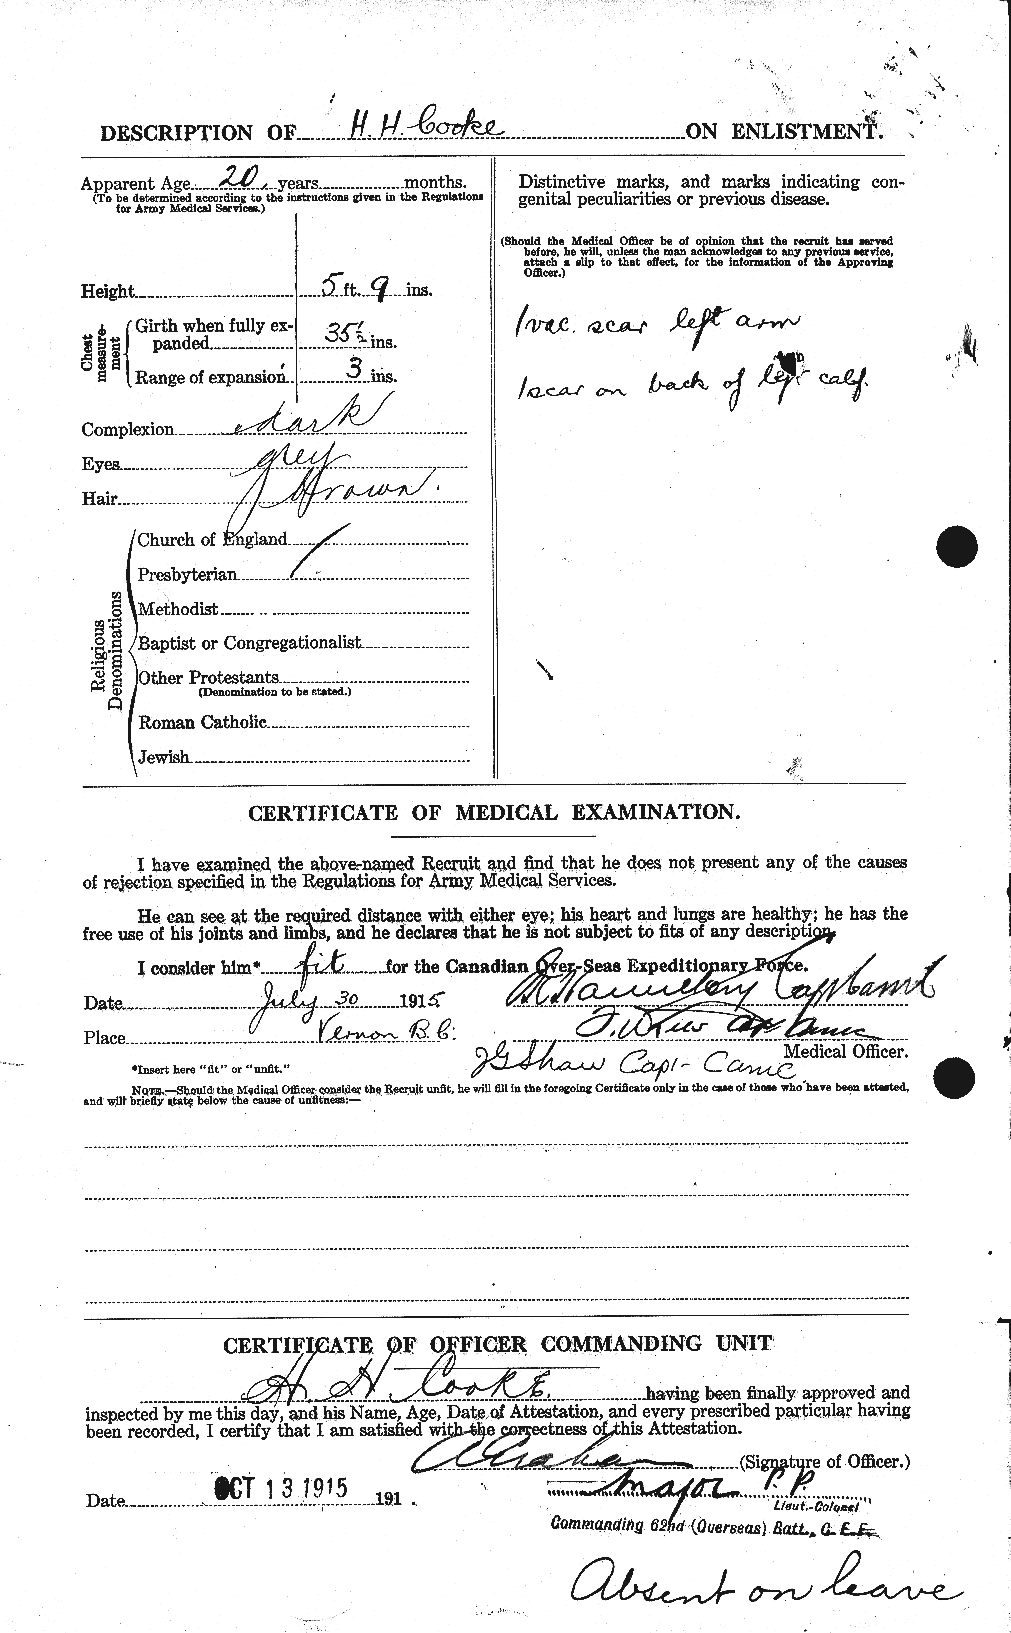 Dossiers du Personnel de la Première Guerre mondiale - CEC 075966b